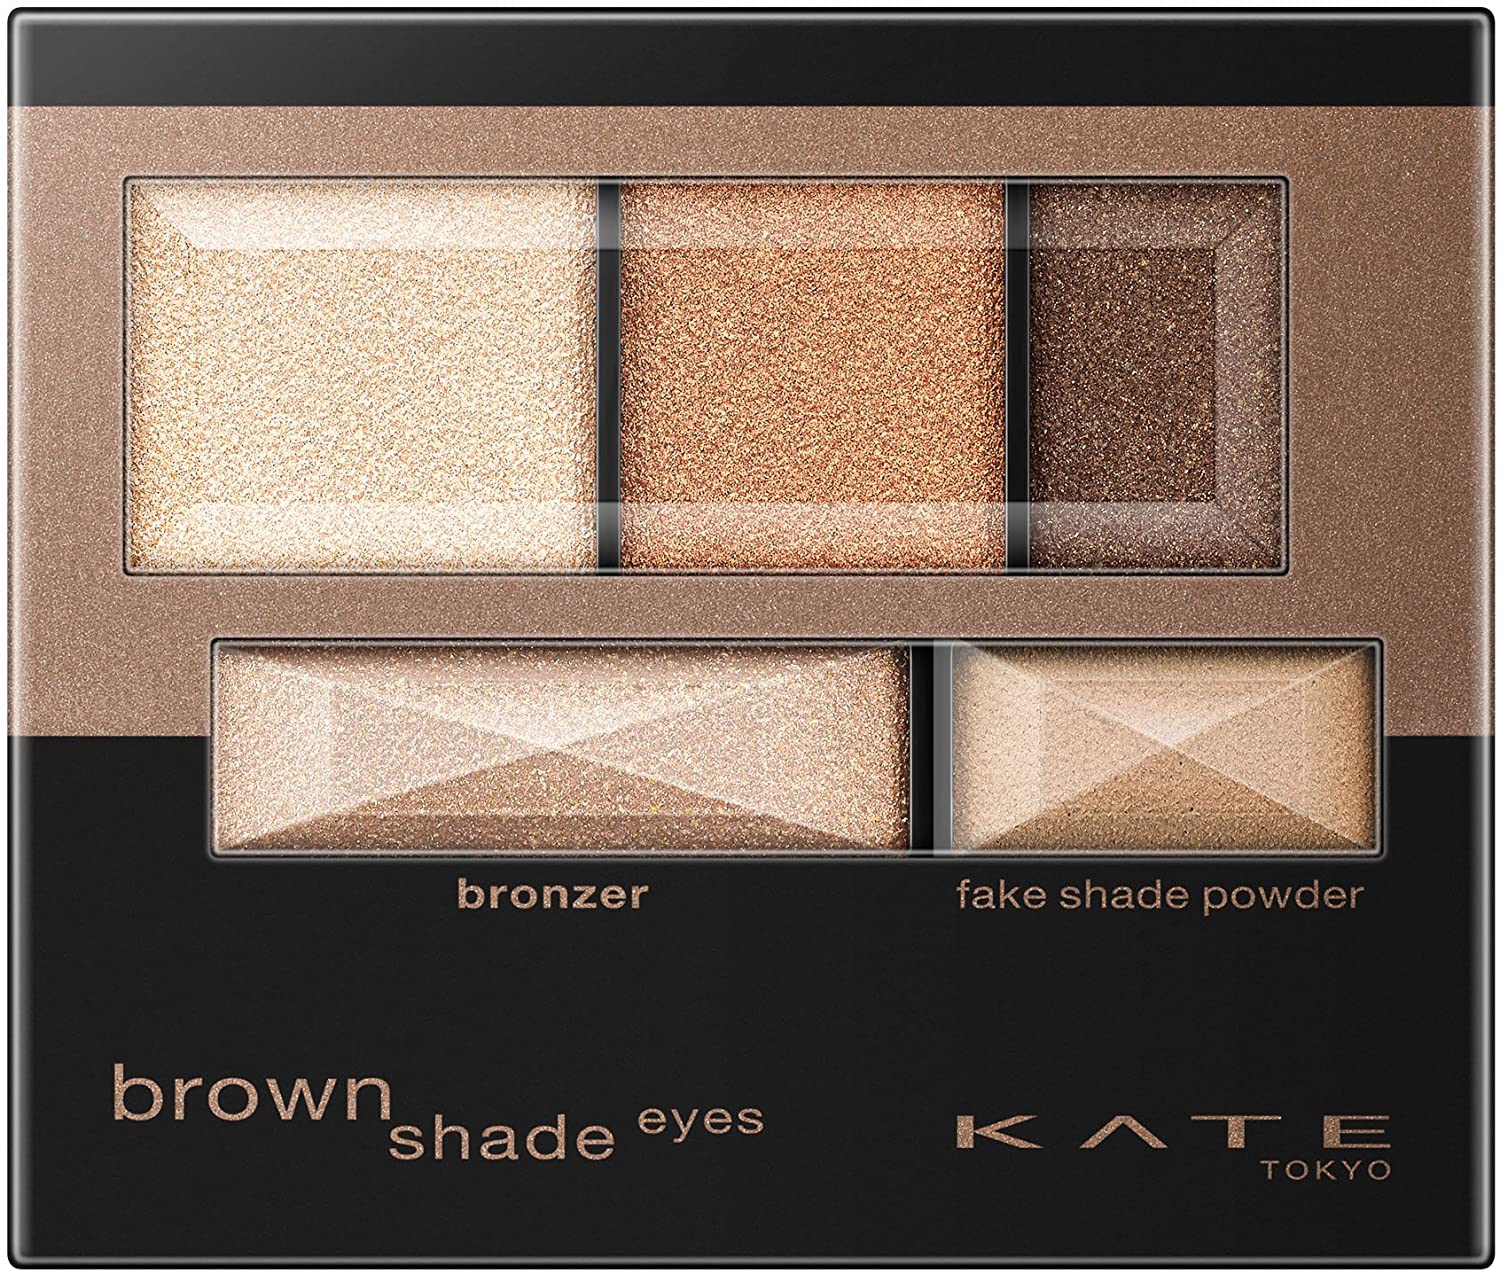 KATE(ケイト) ブラウンシェードアイズNの商品画像2 